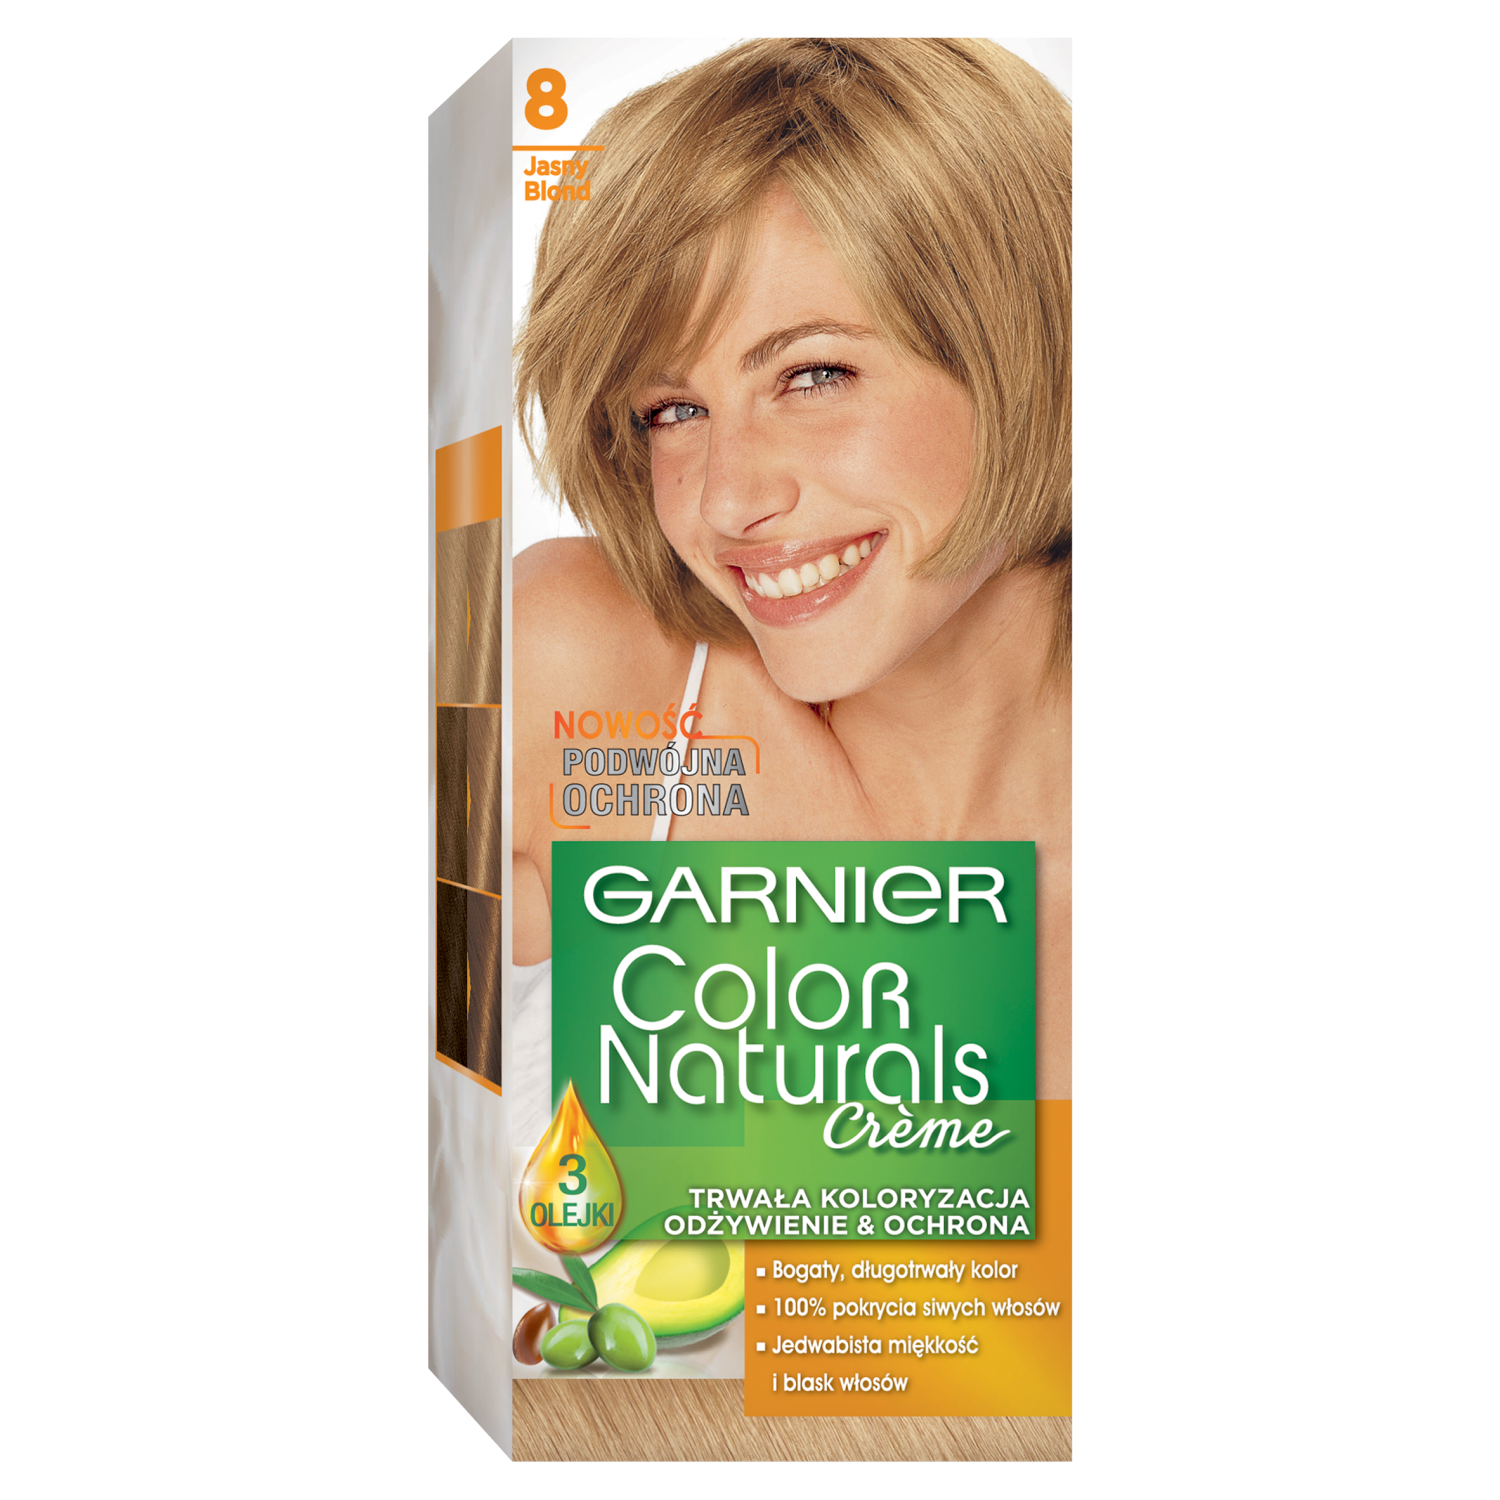 Garnier Color Naturals Créme краска для волос 8 светло-русый, 1 упаковка